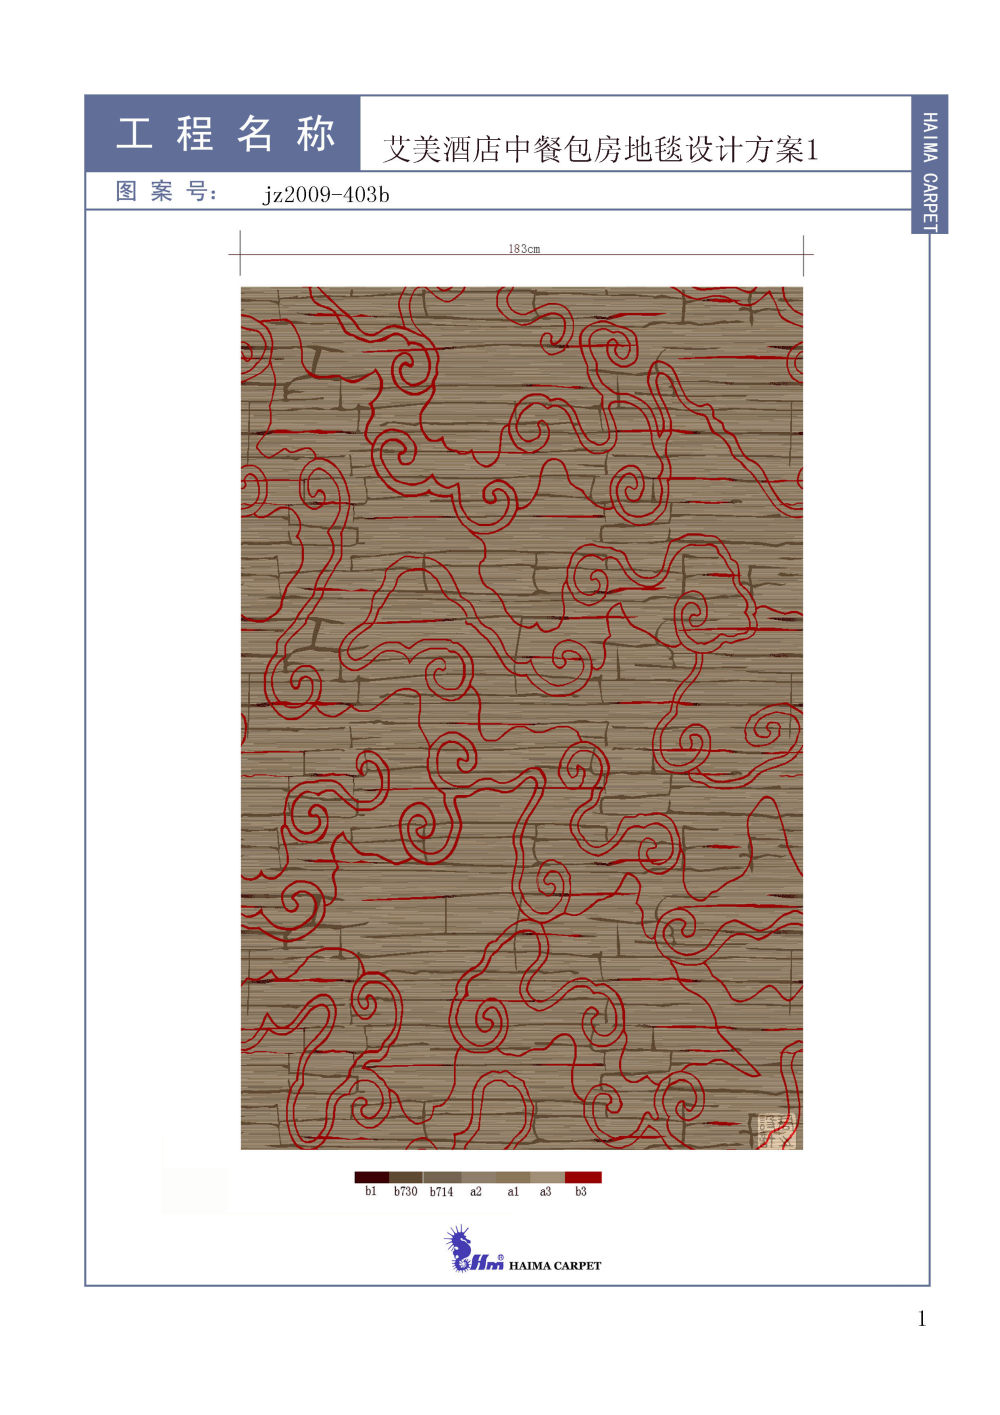 1200+张国内外精品地毯（自己收藏的）_001 (3).jpg